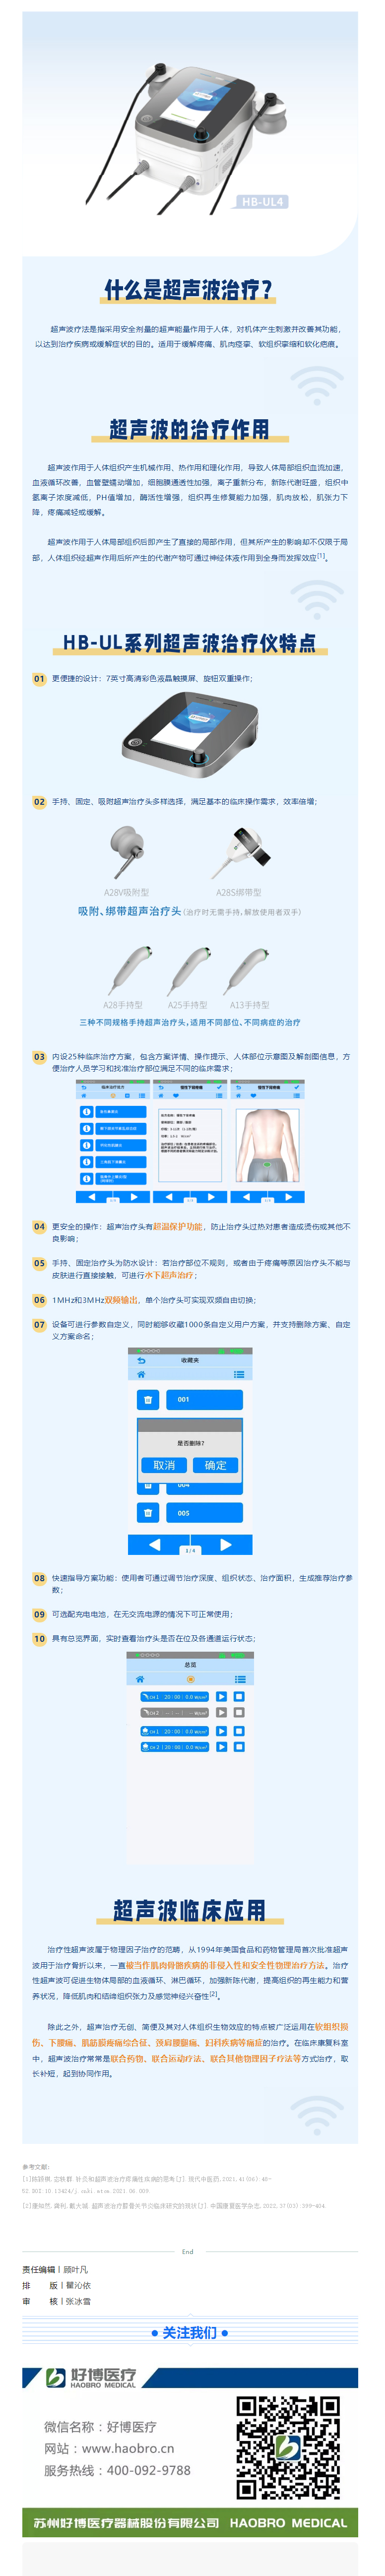 康复新品 申请出战 _ HB-UL系列双频超声波治疗仪.jpg